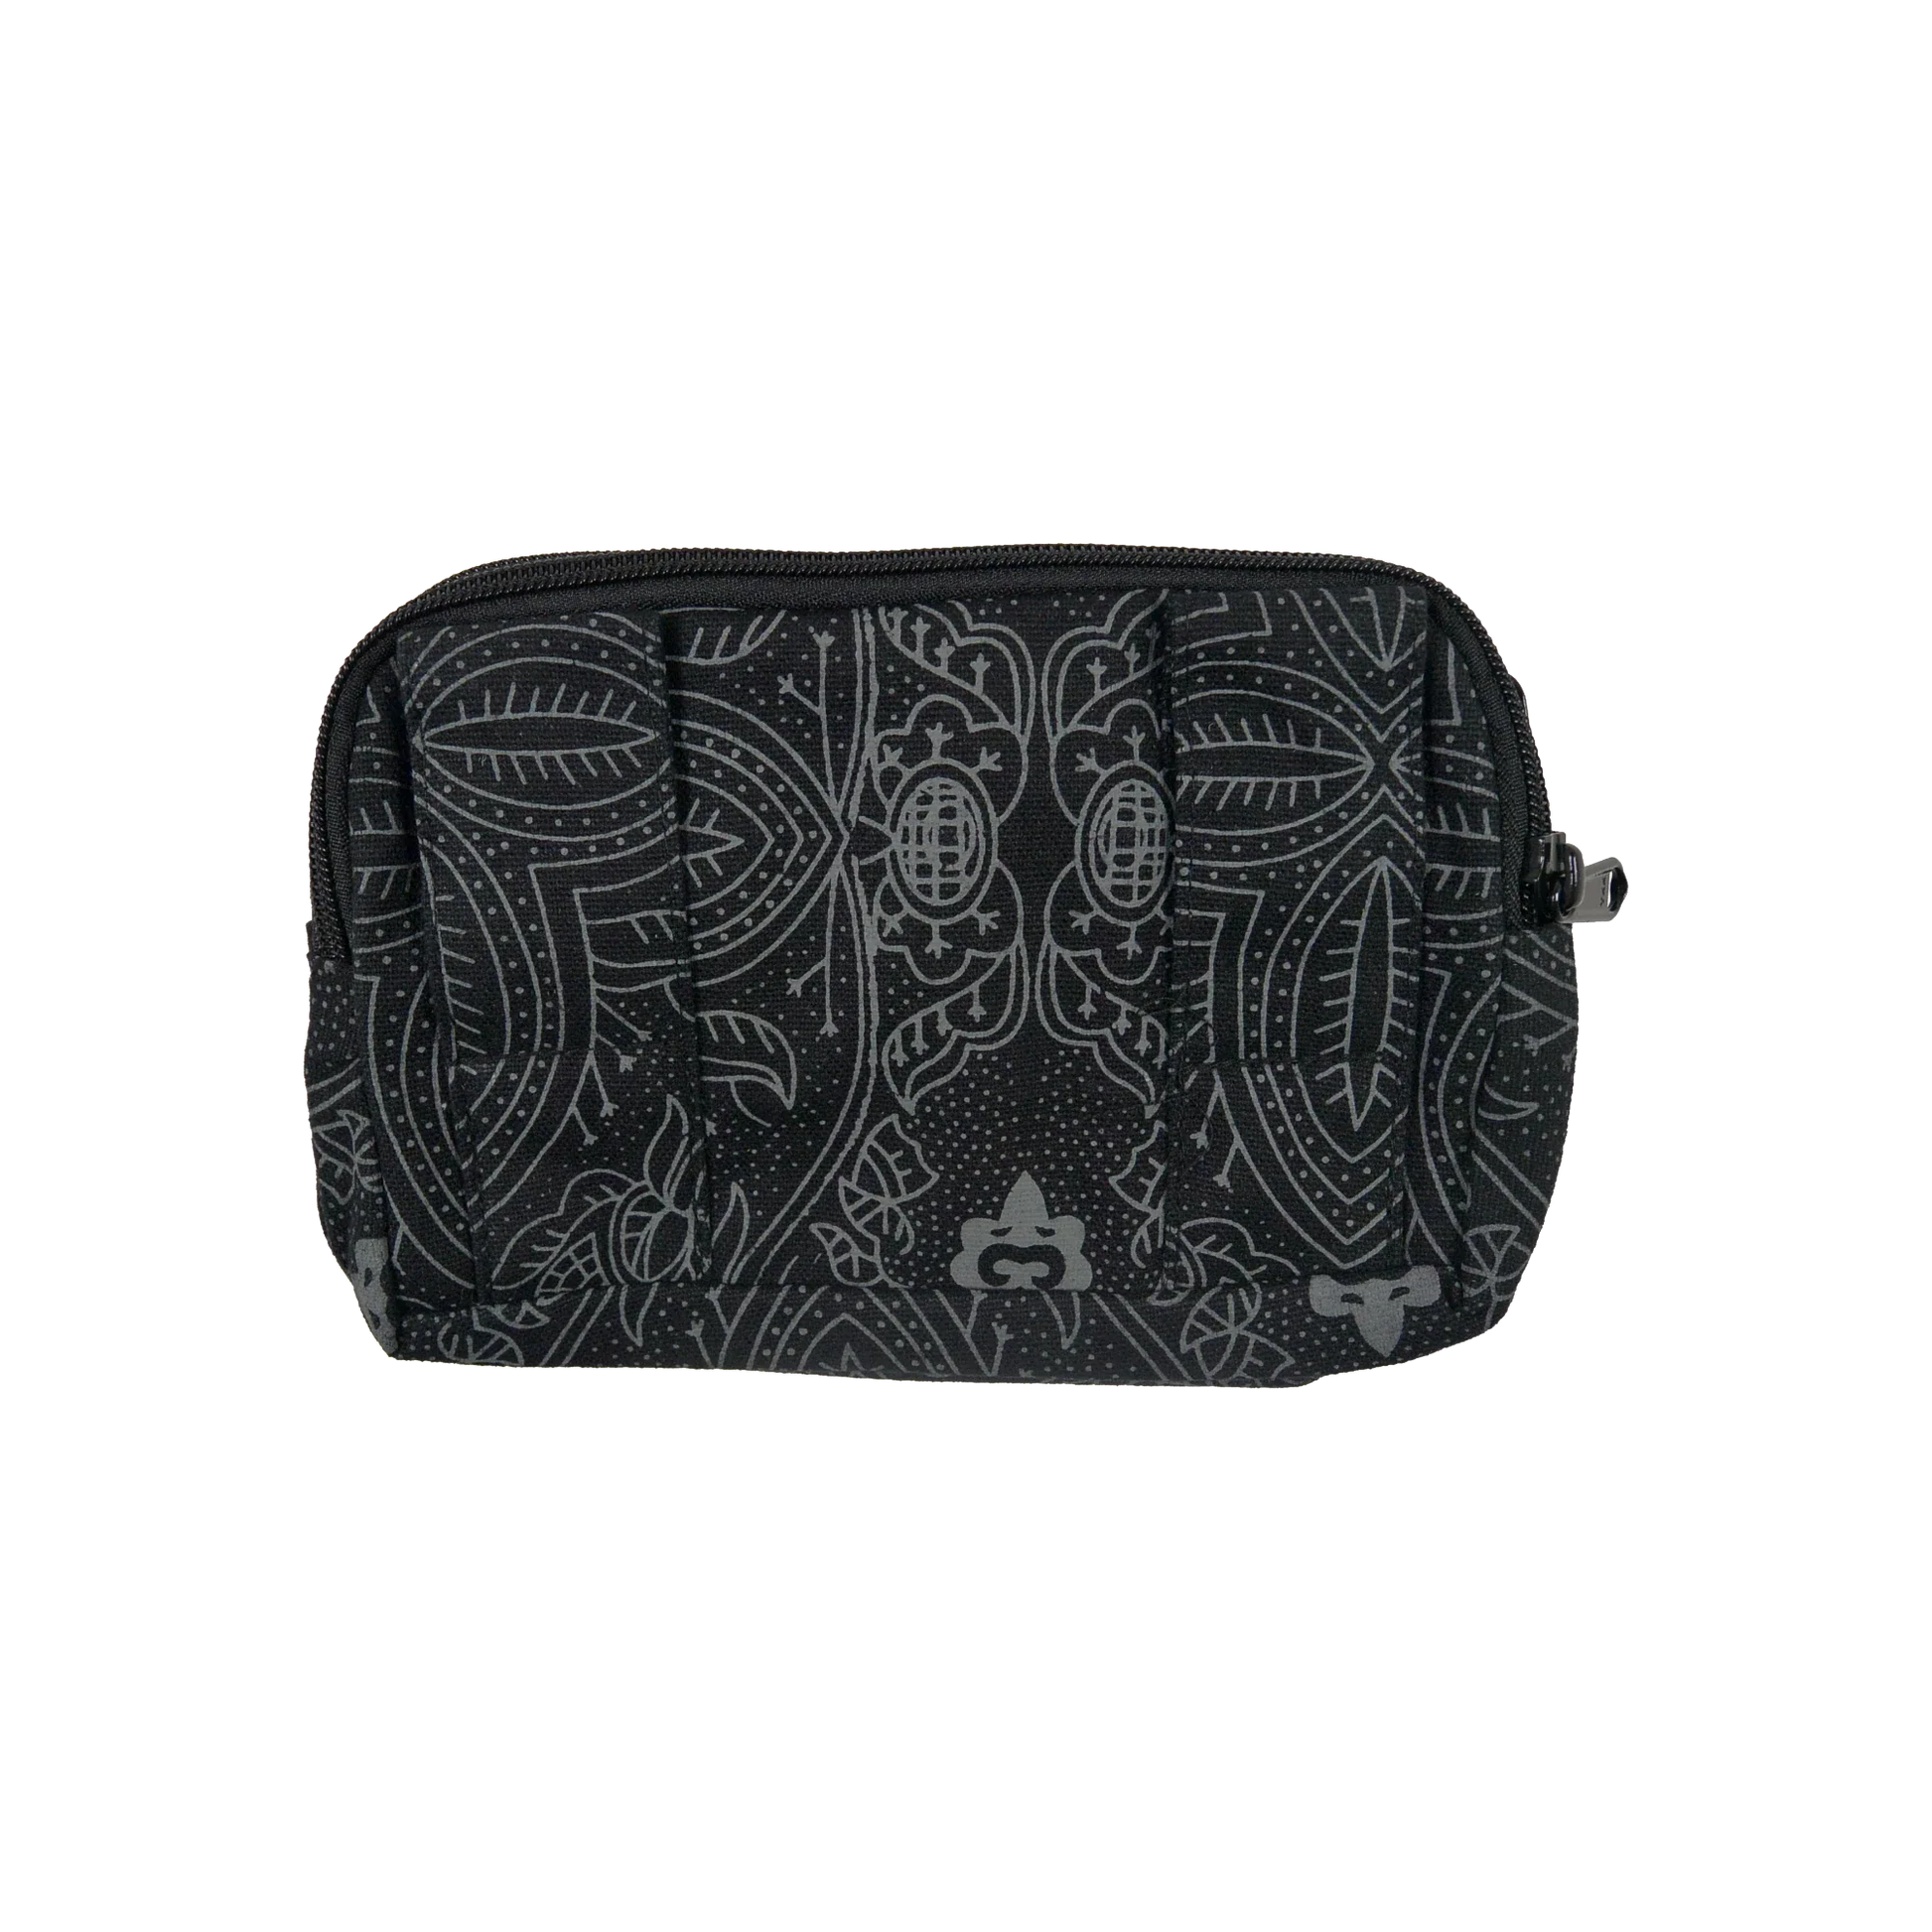 Beuteltsche aus Canvas schwarz mit floralem Muster. Die Tasche besitzt Reisverschlussfächer und ein Einsteckfach vorne und kann mit zwei Gürtelschlaufen auf der Rückseite an jeden Gürtel angebracht werden.